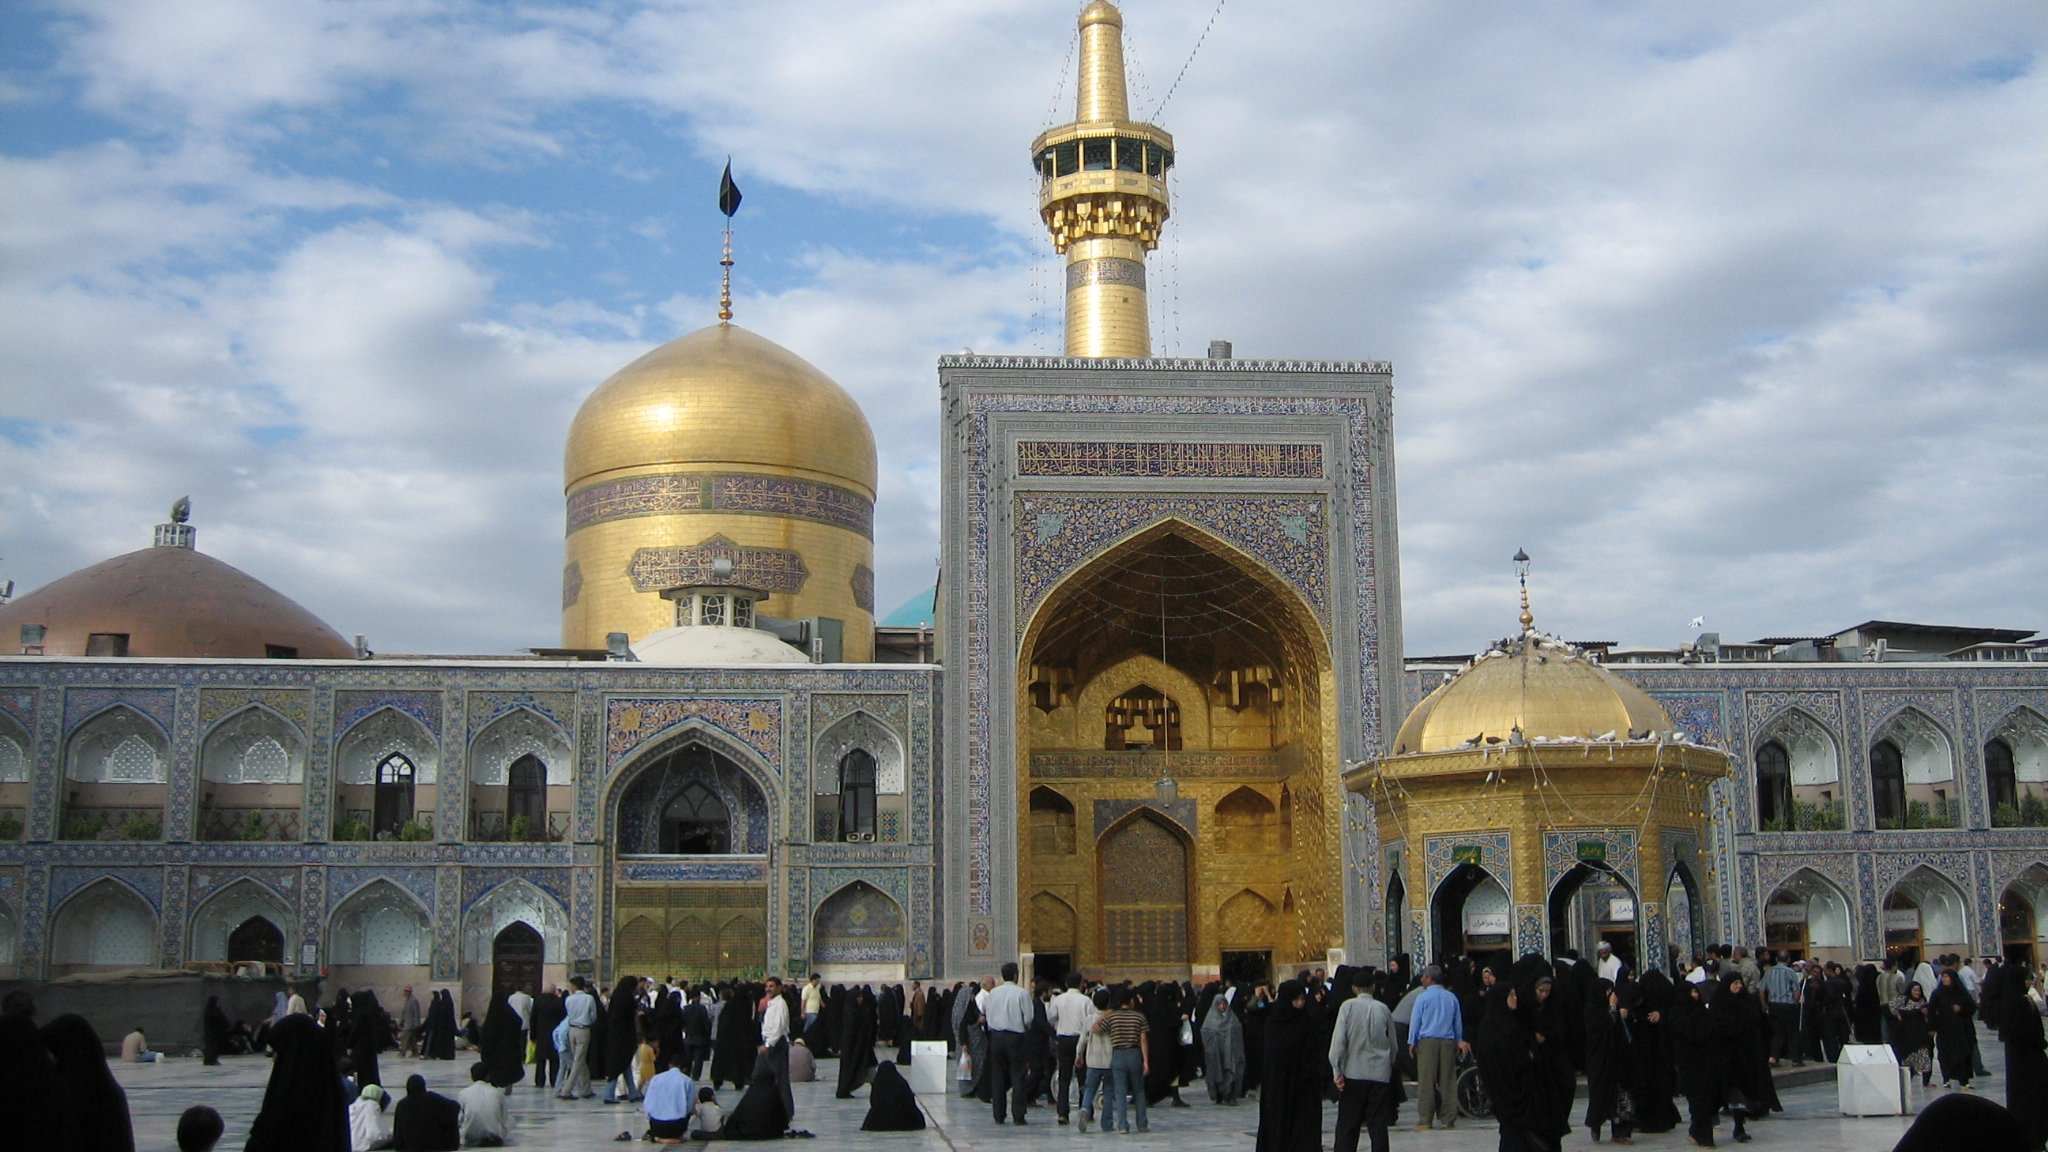 Имама реза. Мечеть Гохаршад Мешхед. Мешхед город в Иране. Иран мавзолей имама резы. Имам реза Мешхед.